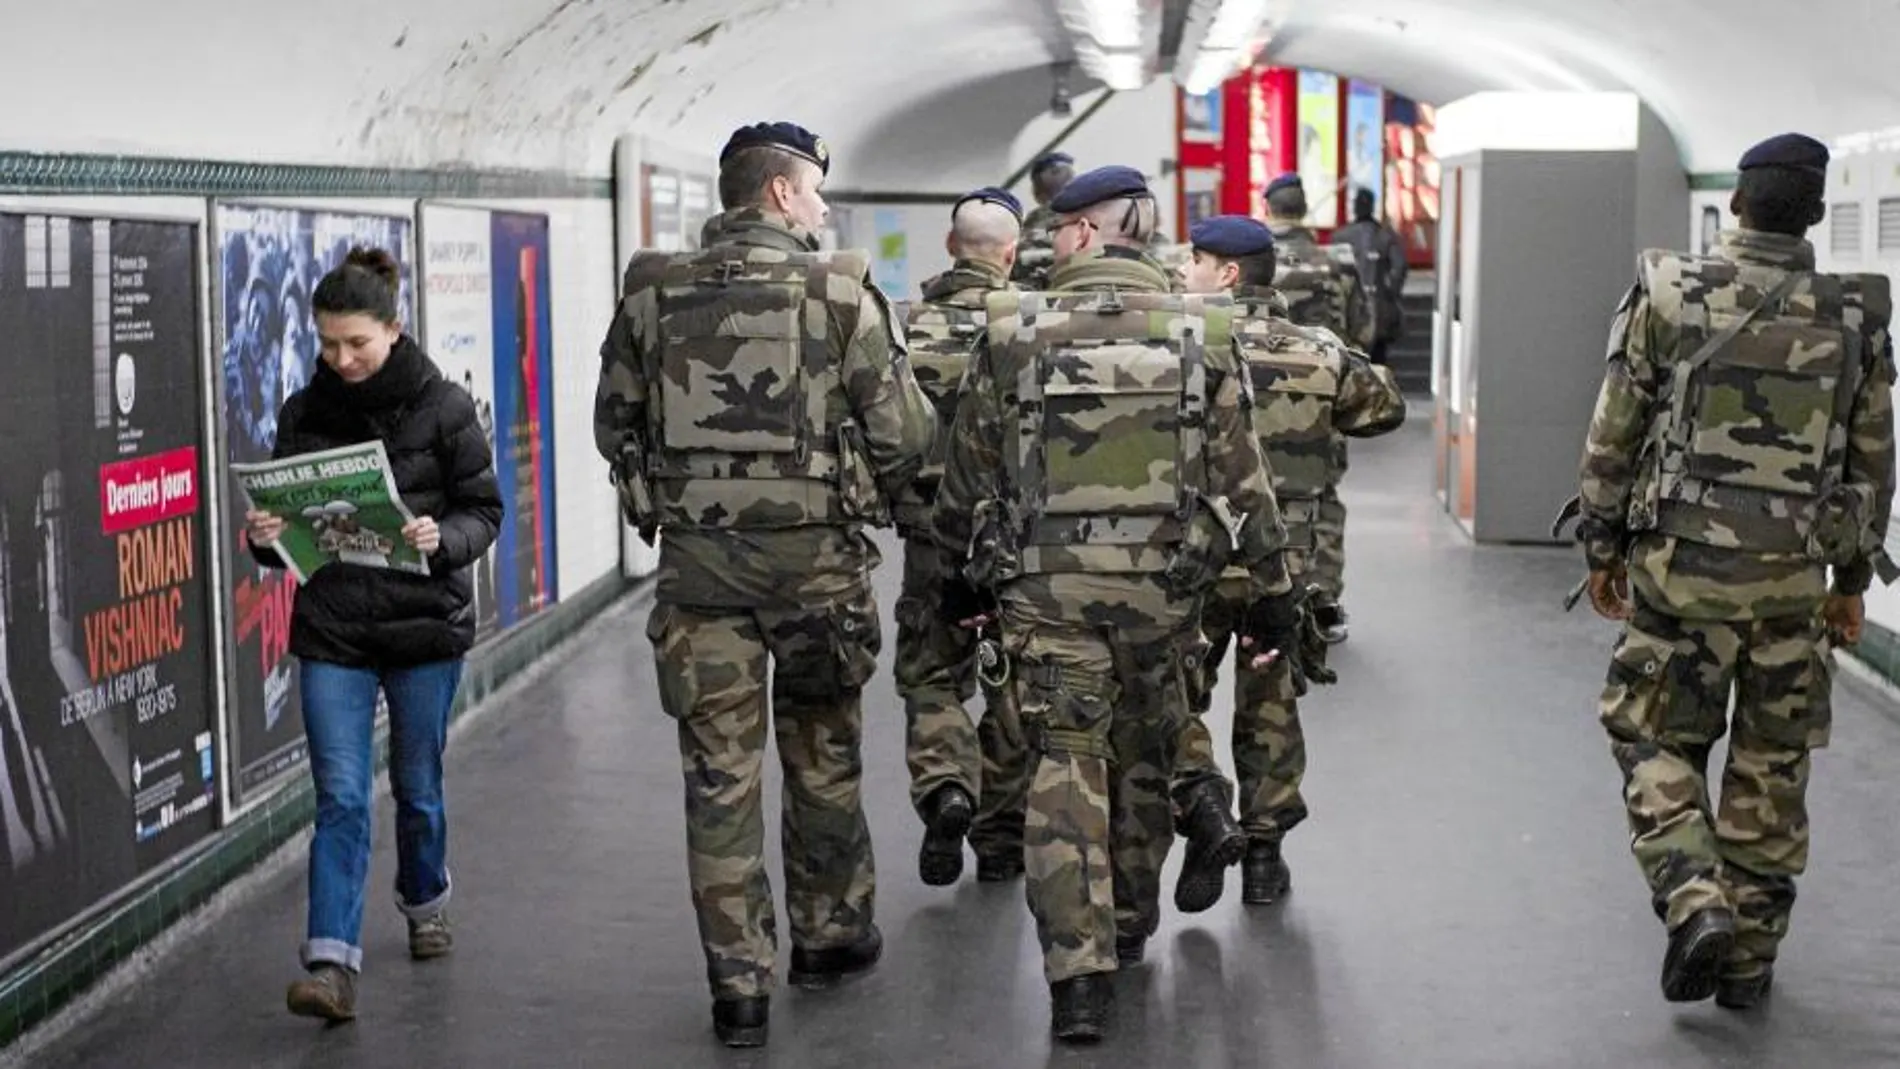 Francia ha sacado a sus tropas a la calle, mientras que en España sólo han sido informadas del nuevo nivel de alerta